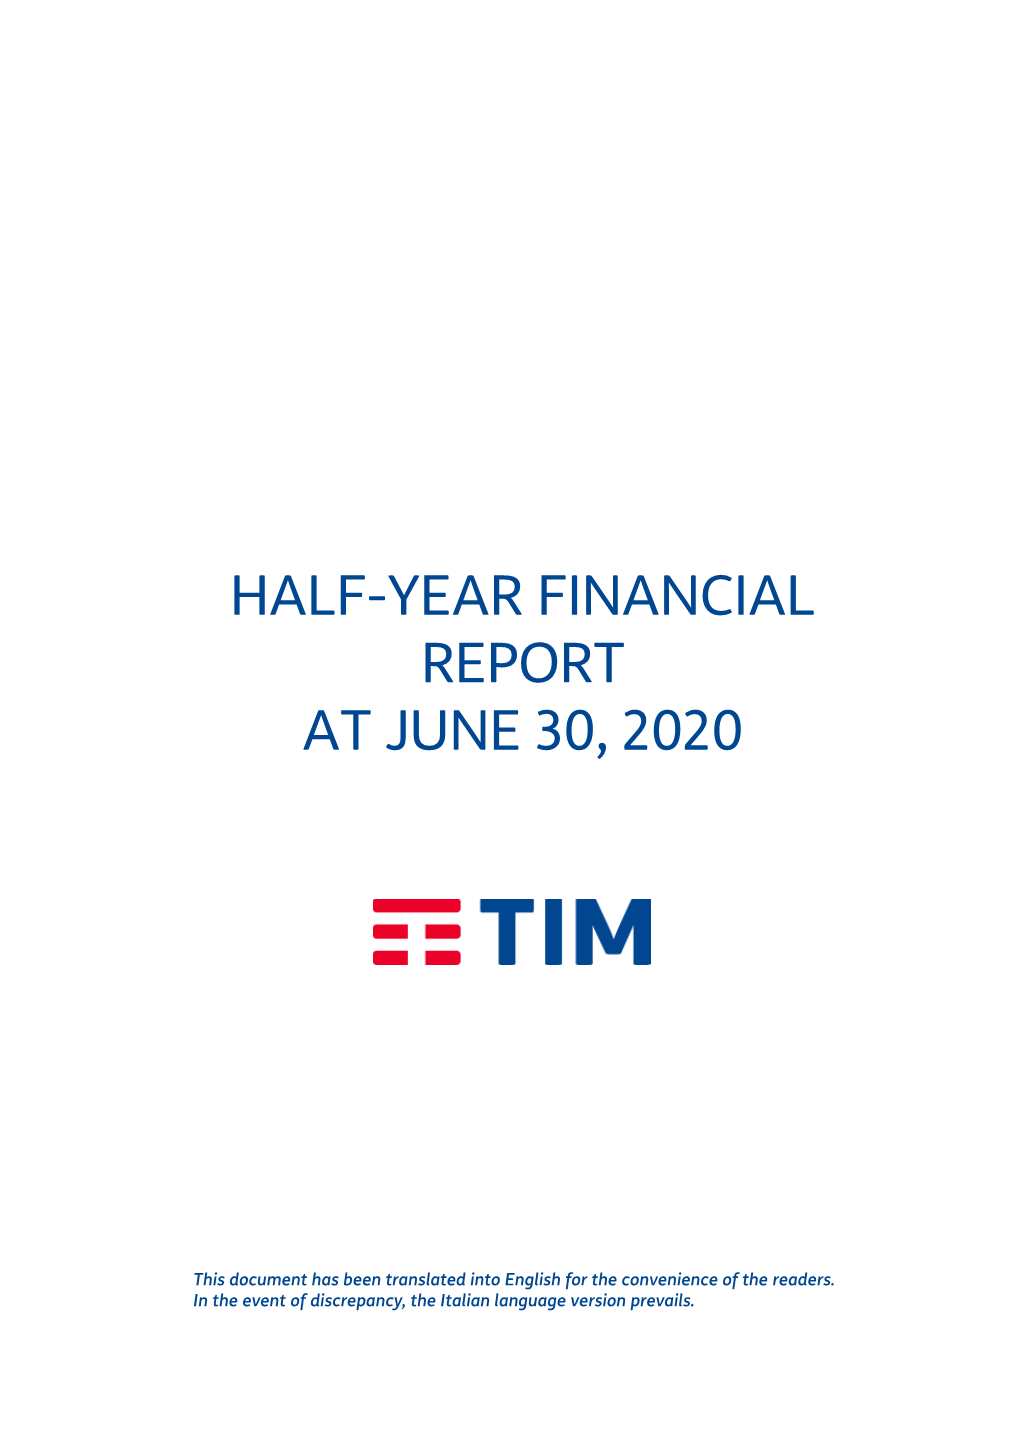 Half-Year Financial Report at June 30, 2020